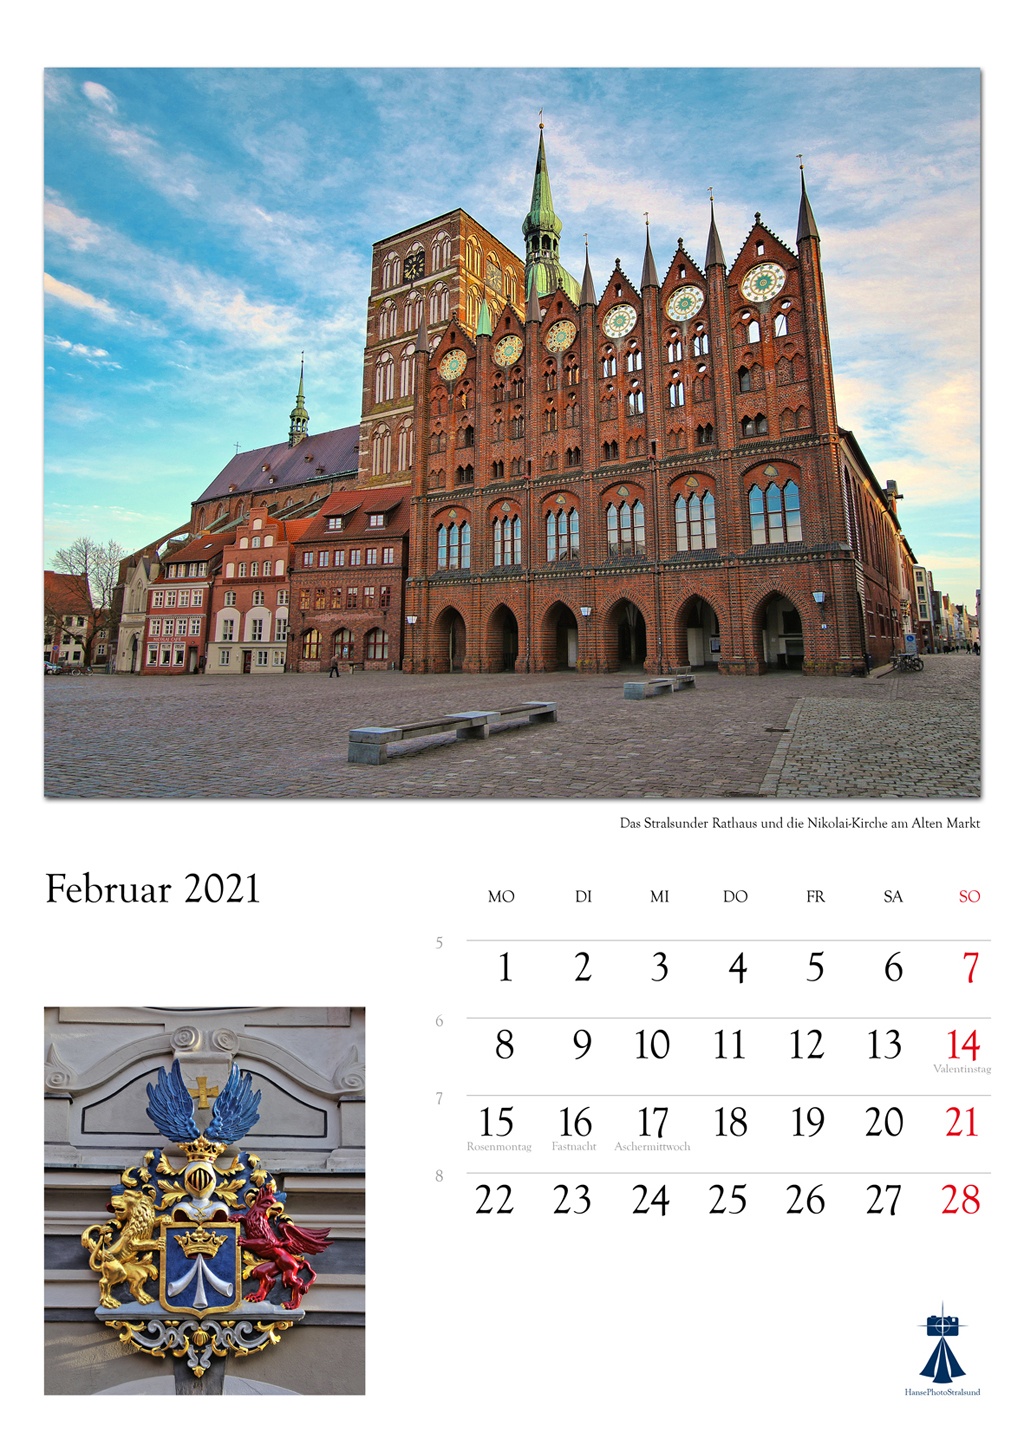 Das Stralsunder Rathaus und die

Nikolaikirche am Alten Markt